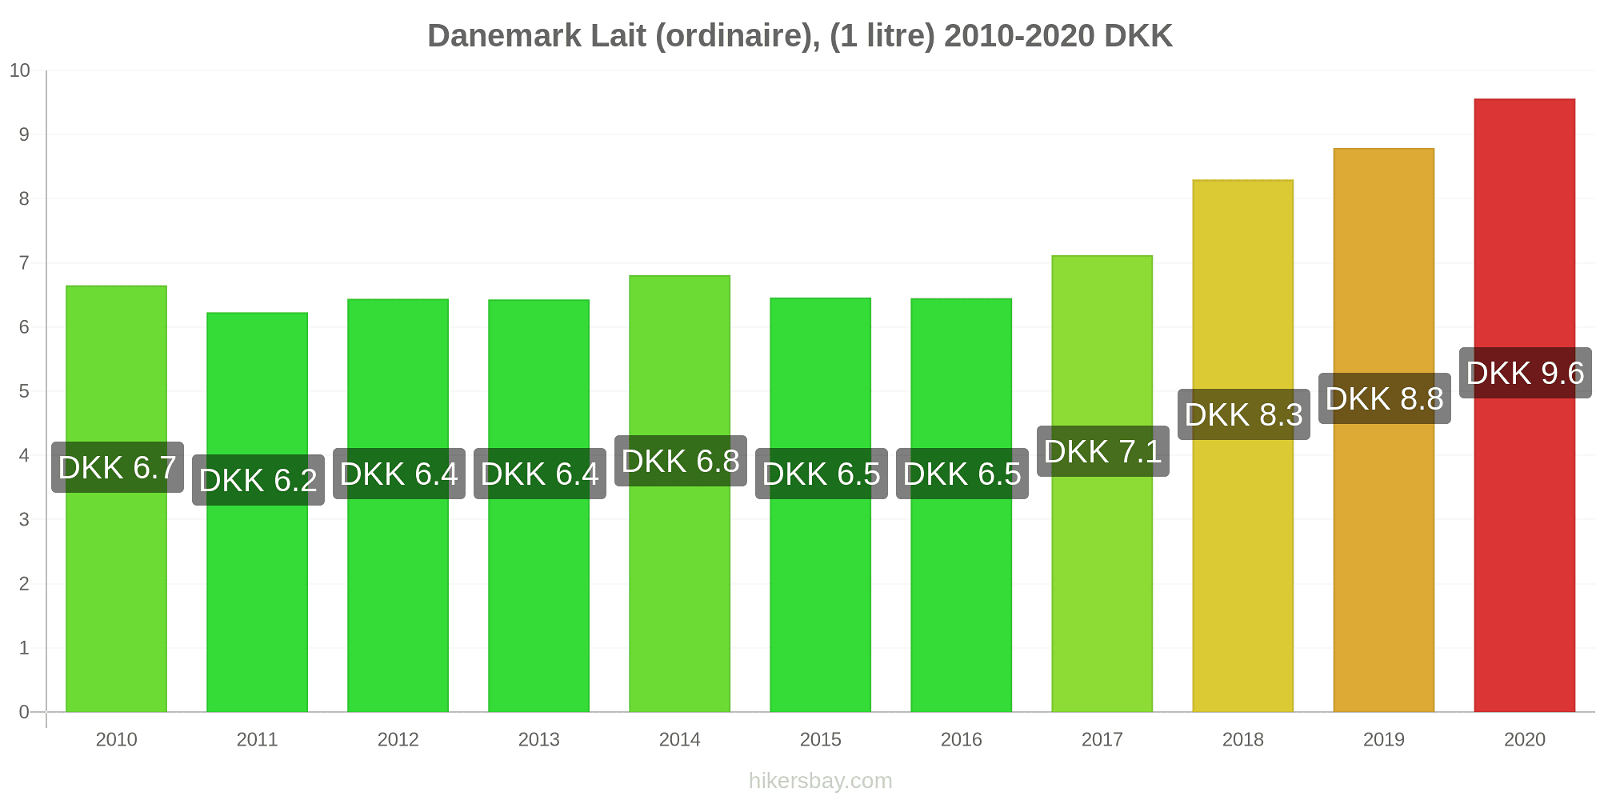 Danemark changements de prix (Régulier), lait (1 litre) hikersbay.com